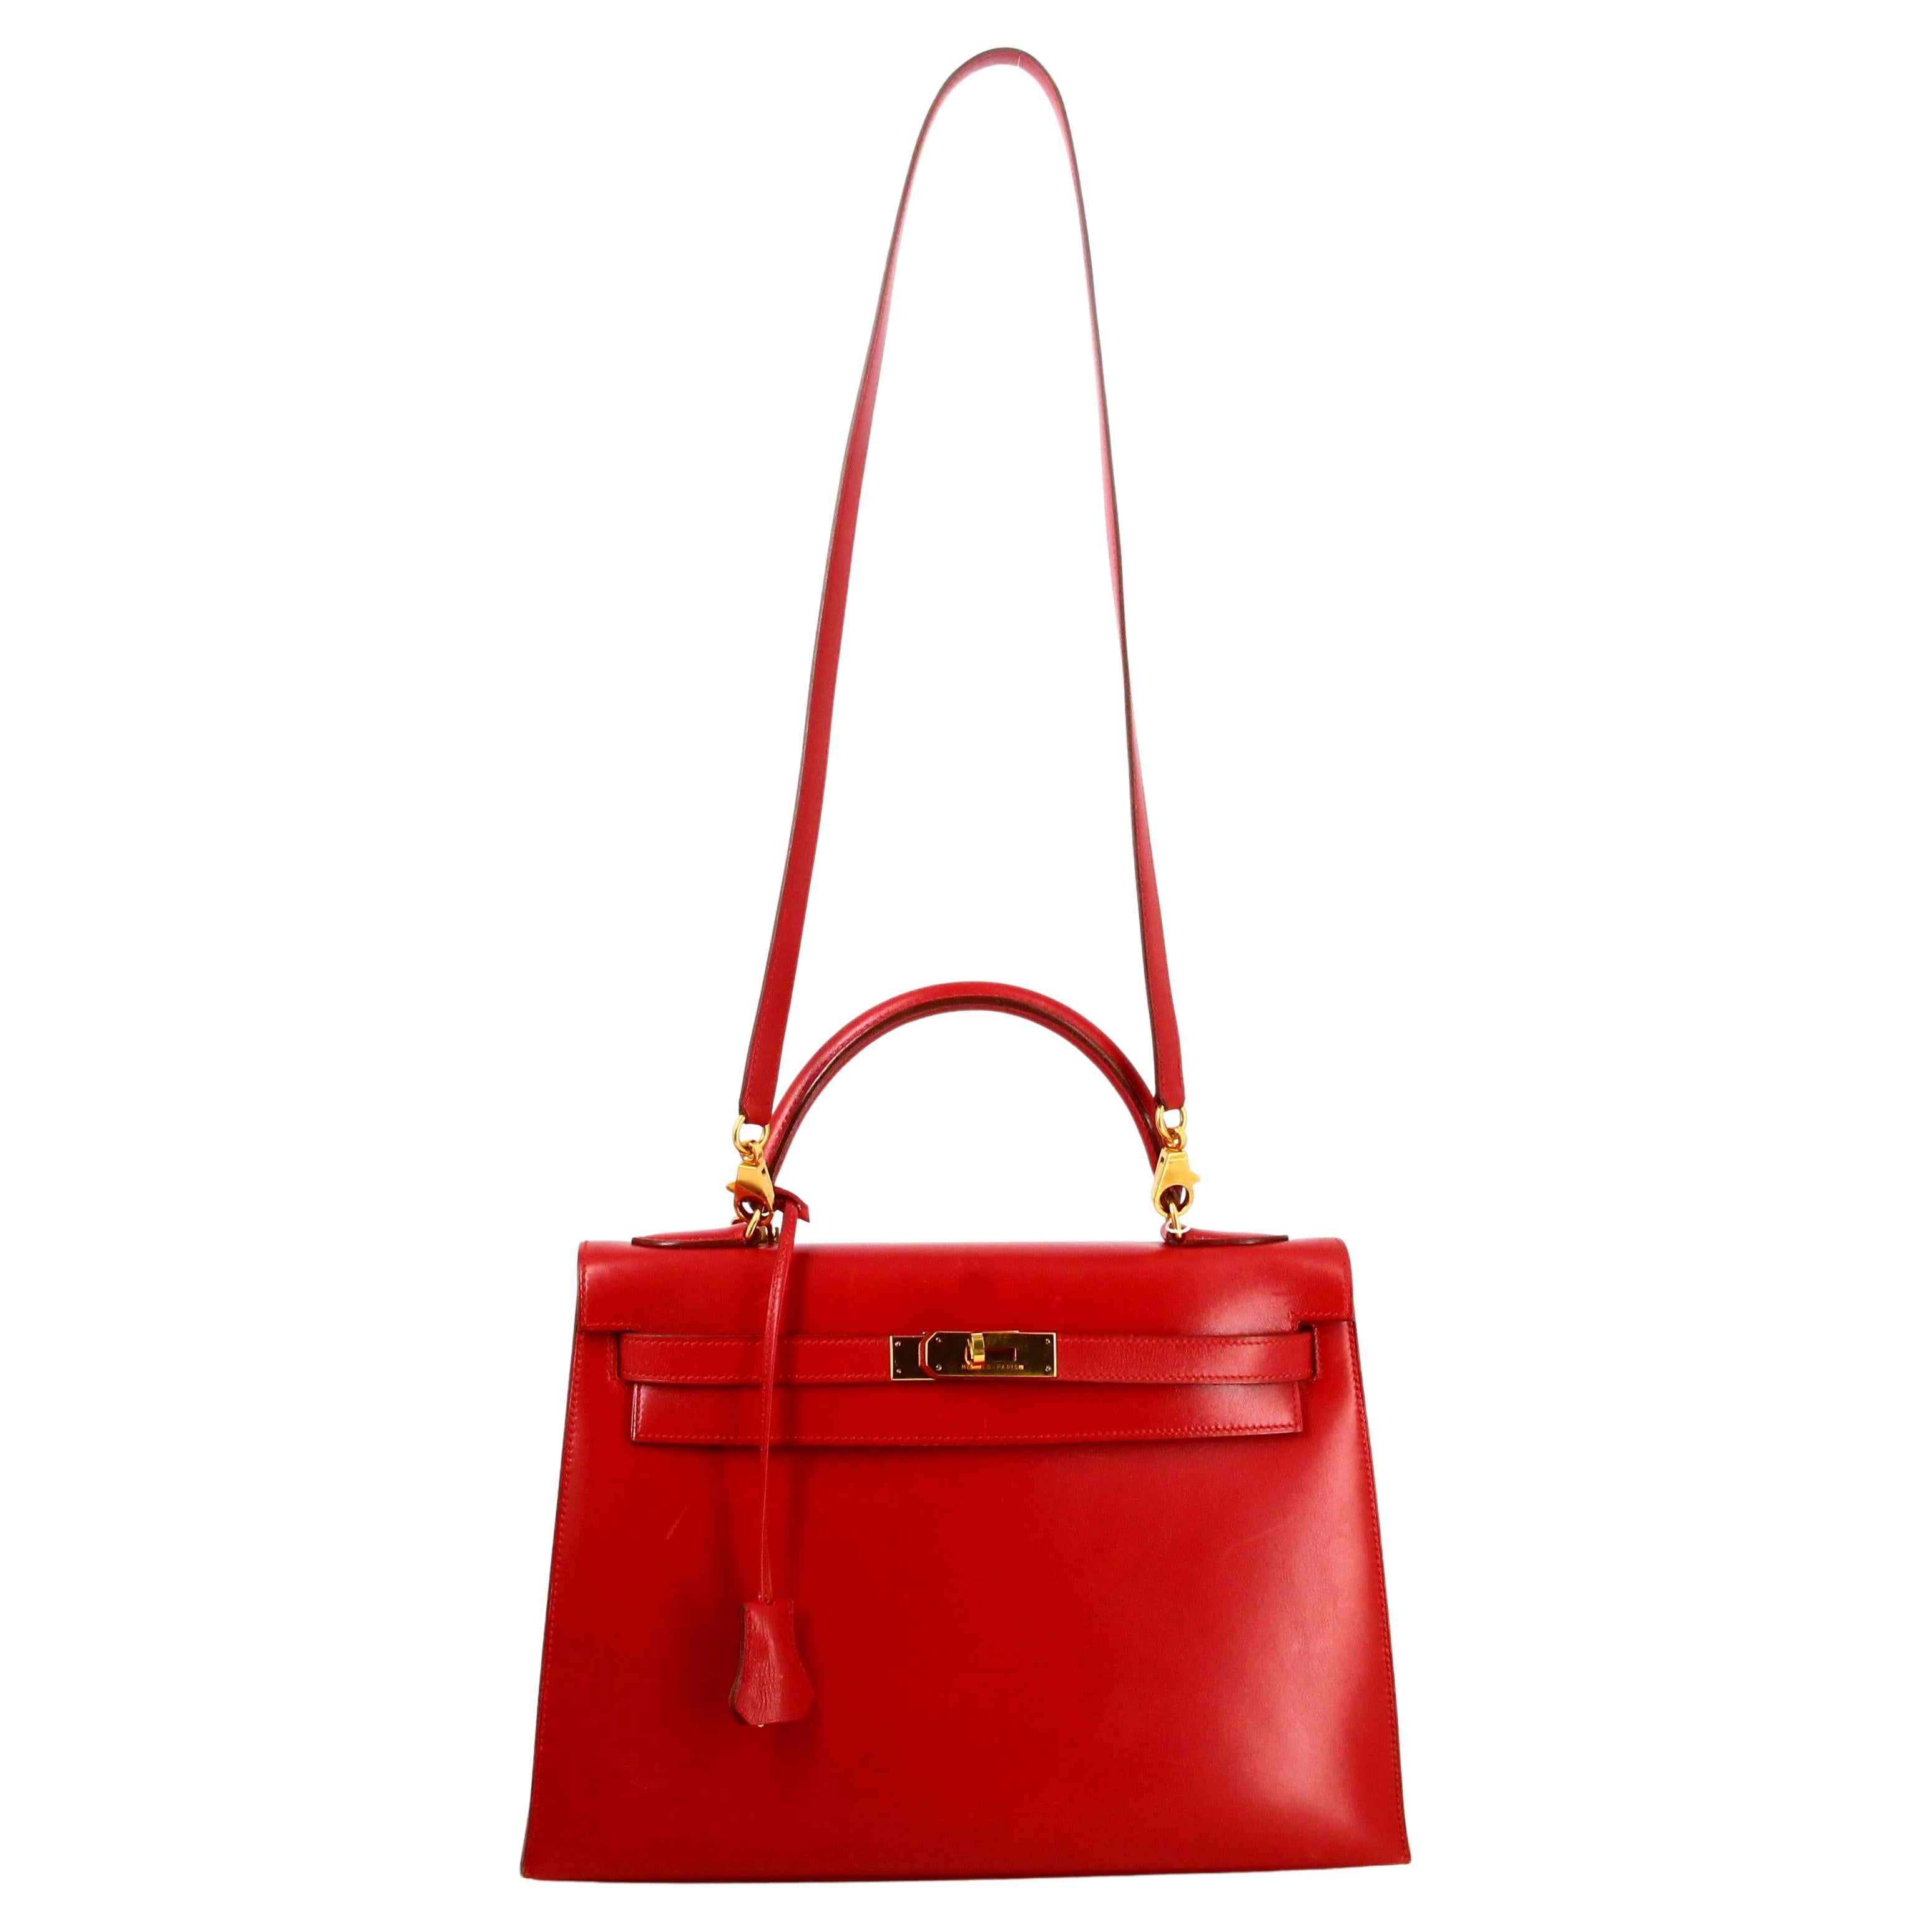 1983 Hermes Kelly Handbag Red Leather  For Sale